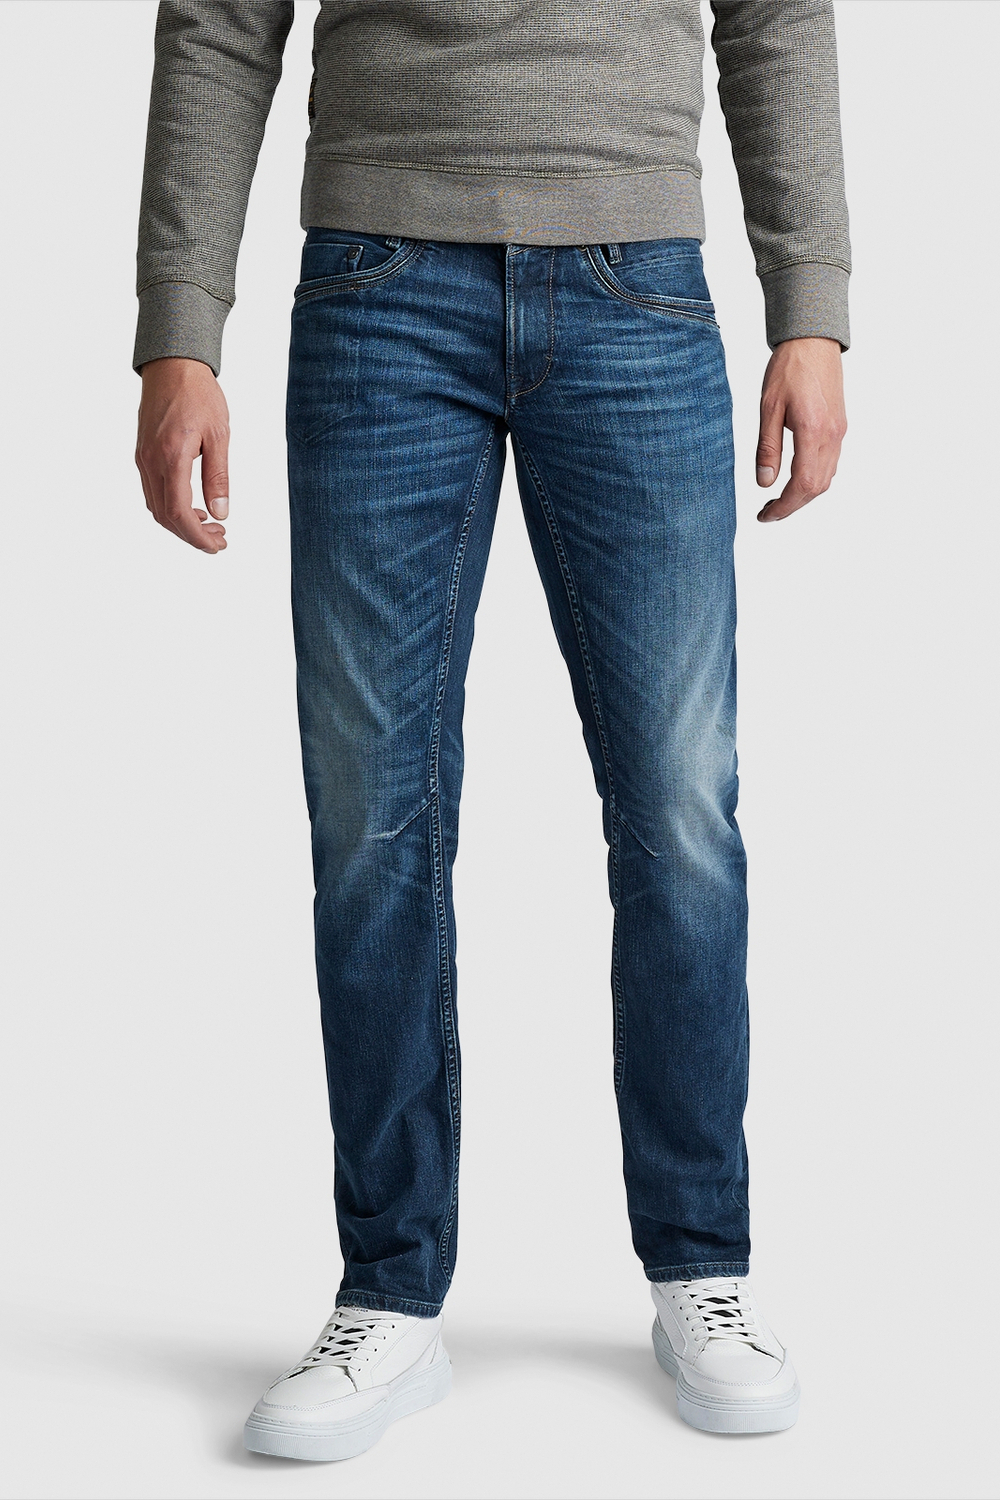 Verzamelen verzoek wenselijk skymaster ptr650 pme legend jeans diw